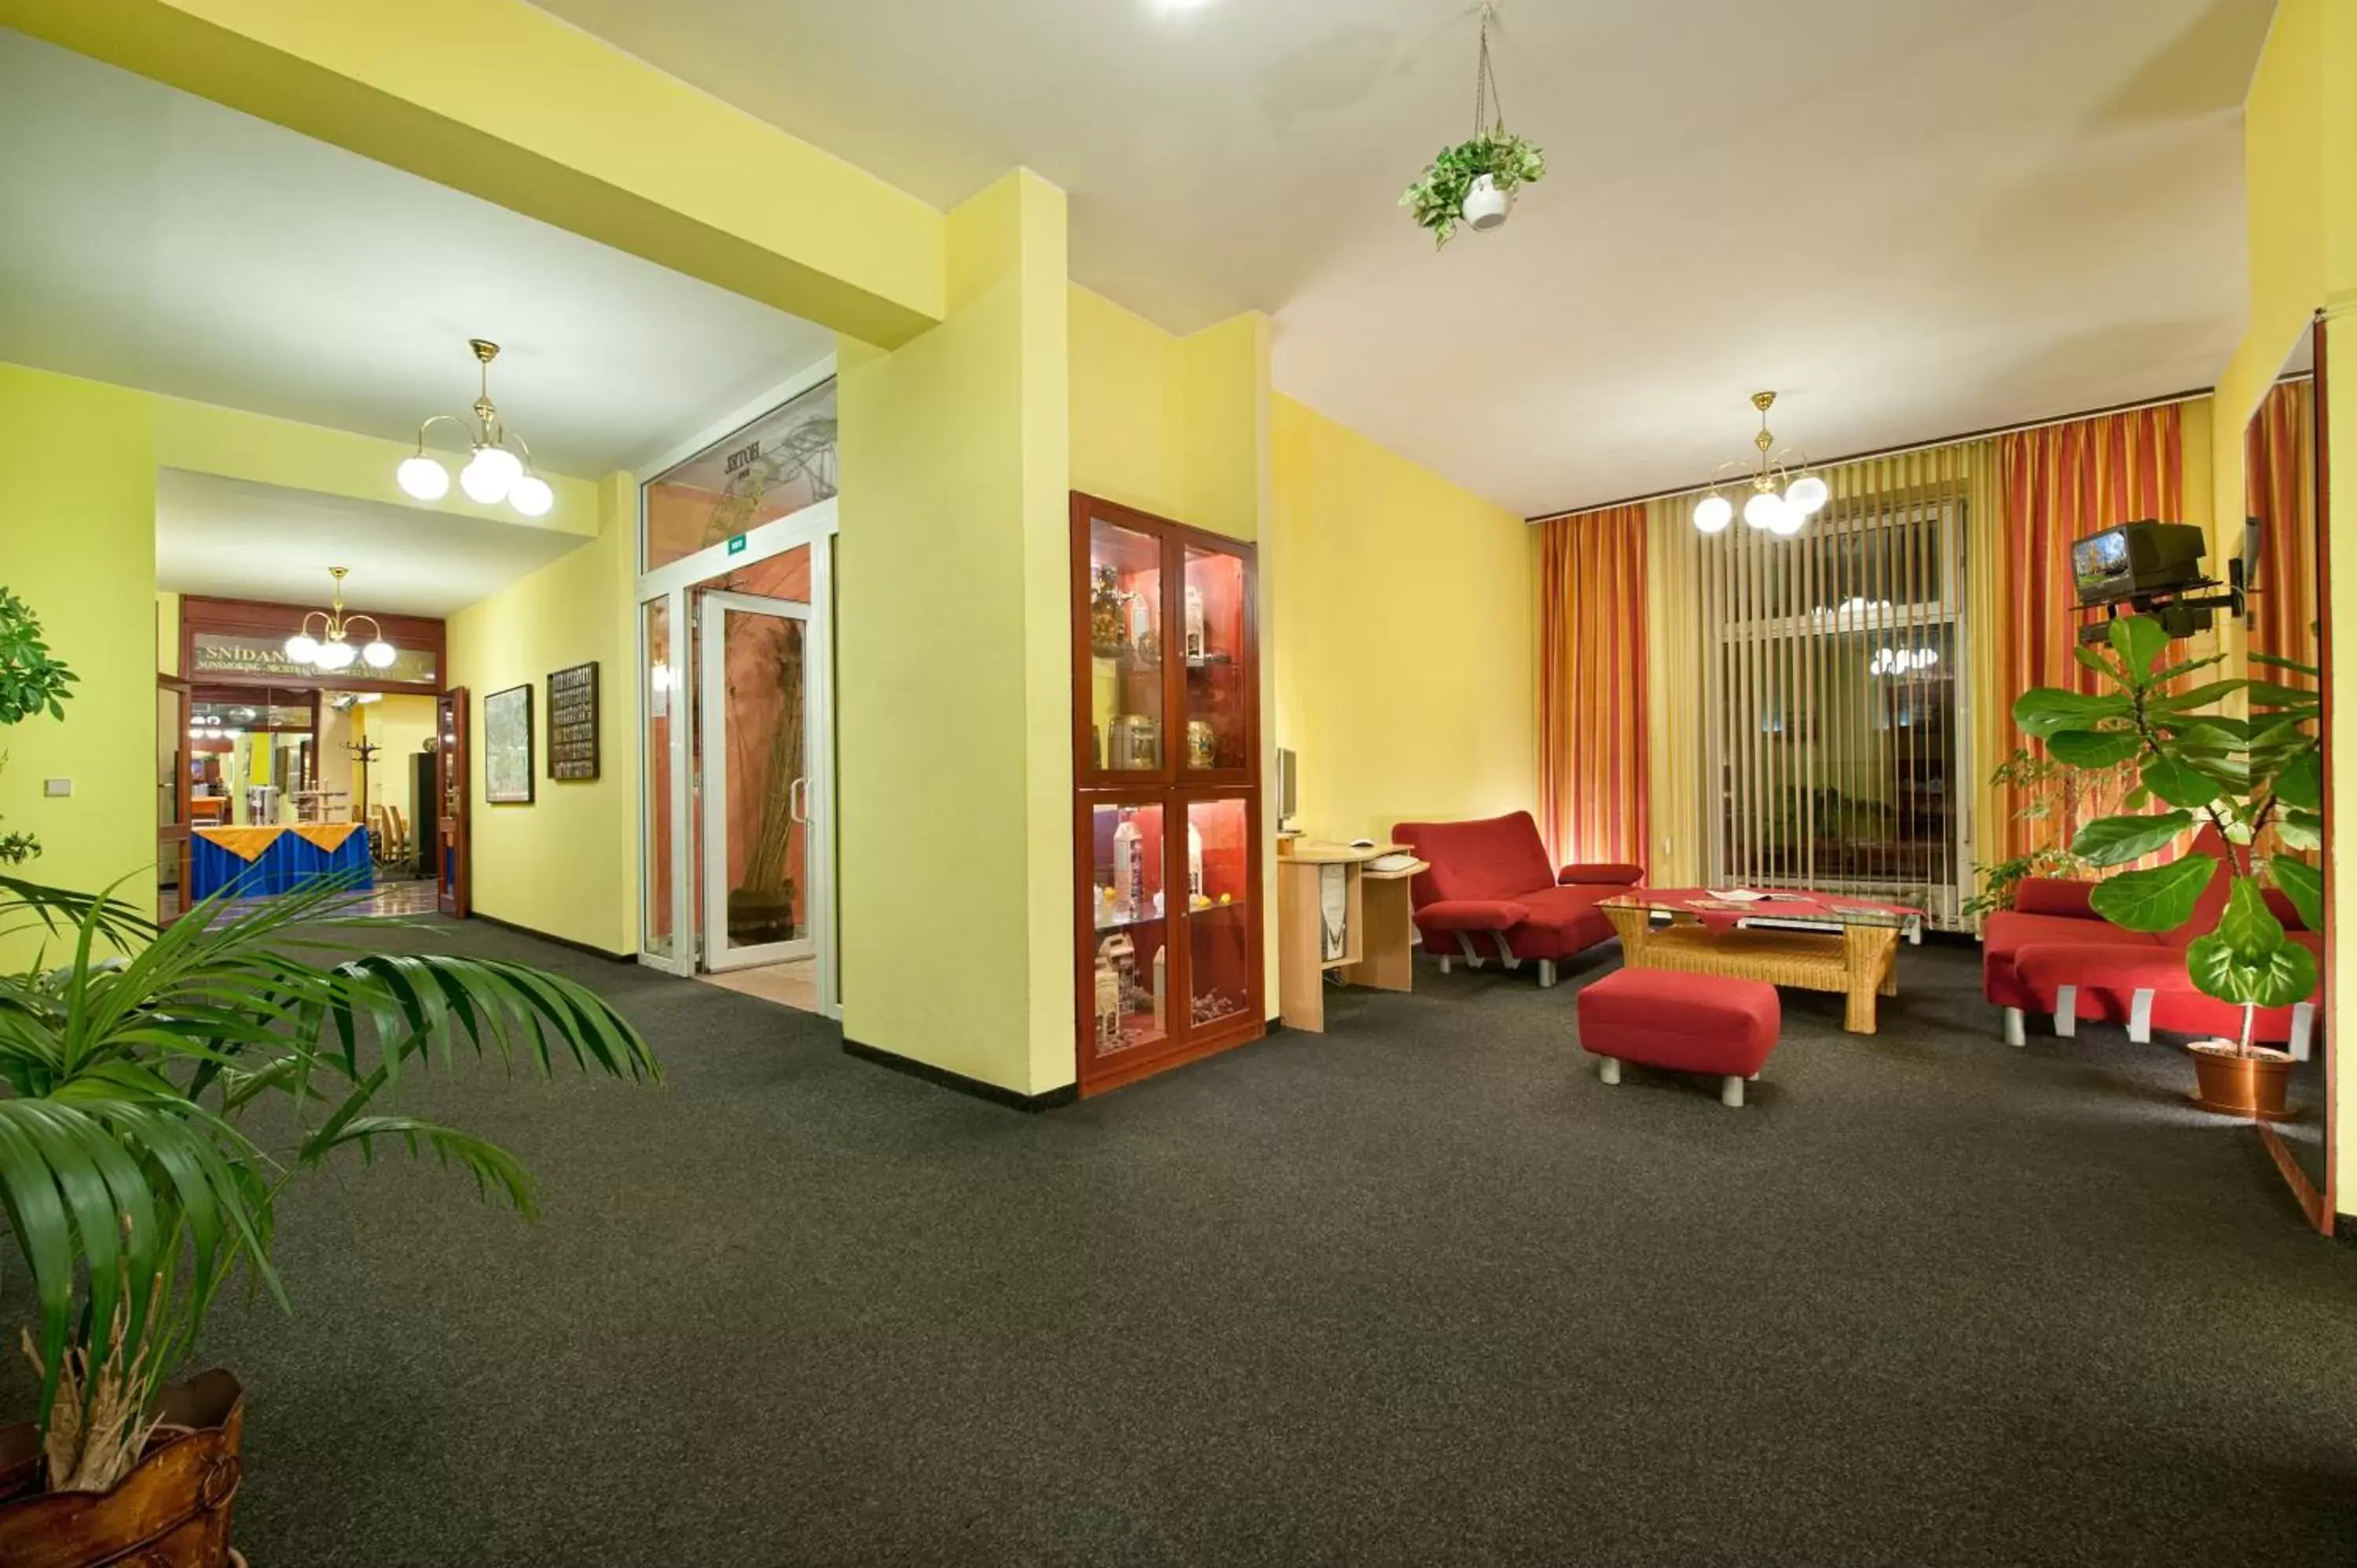 Lobby or reception, Lobby/Reception in Hotel Henrietta